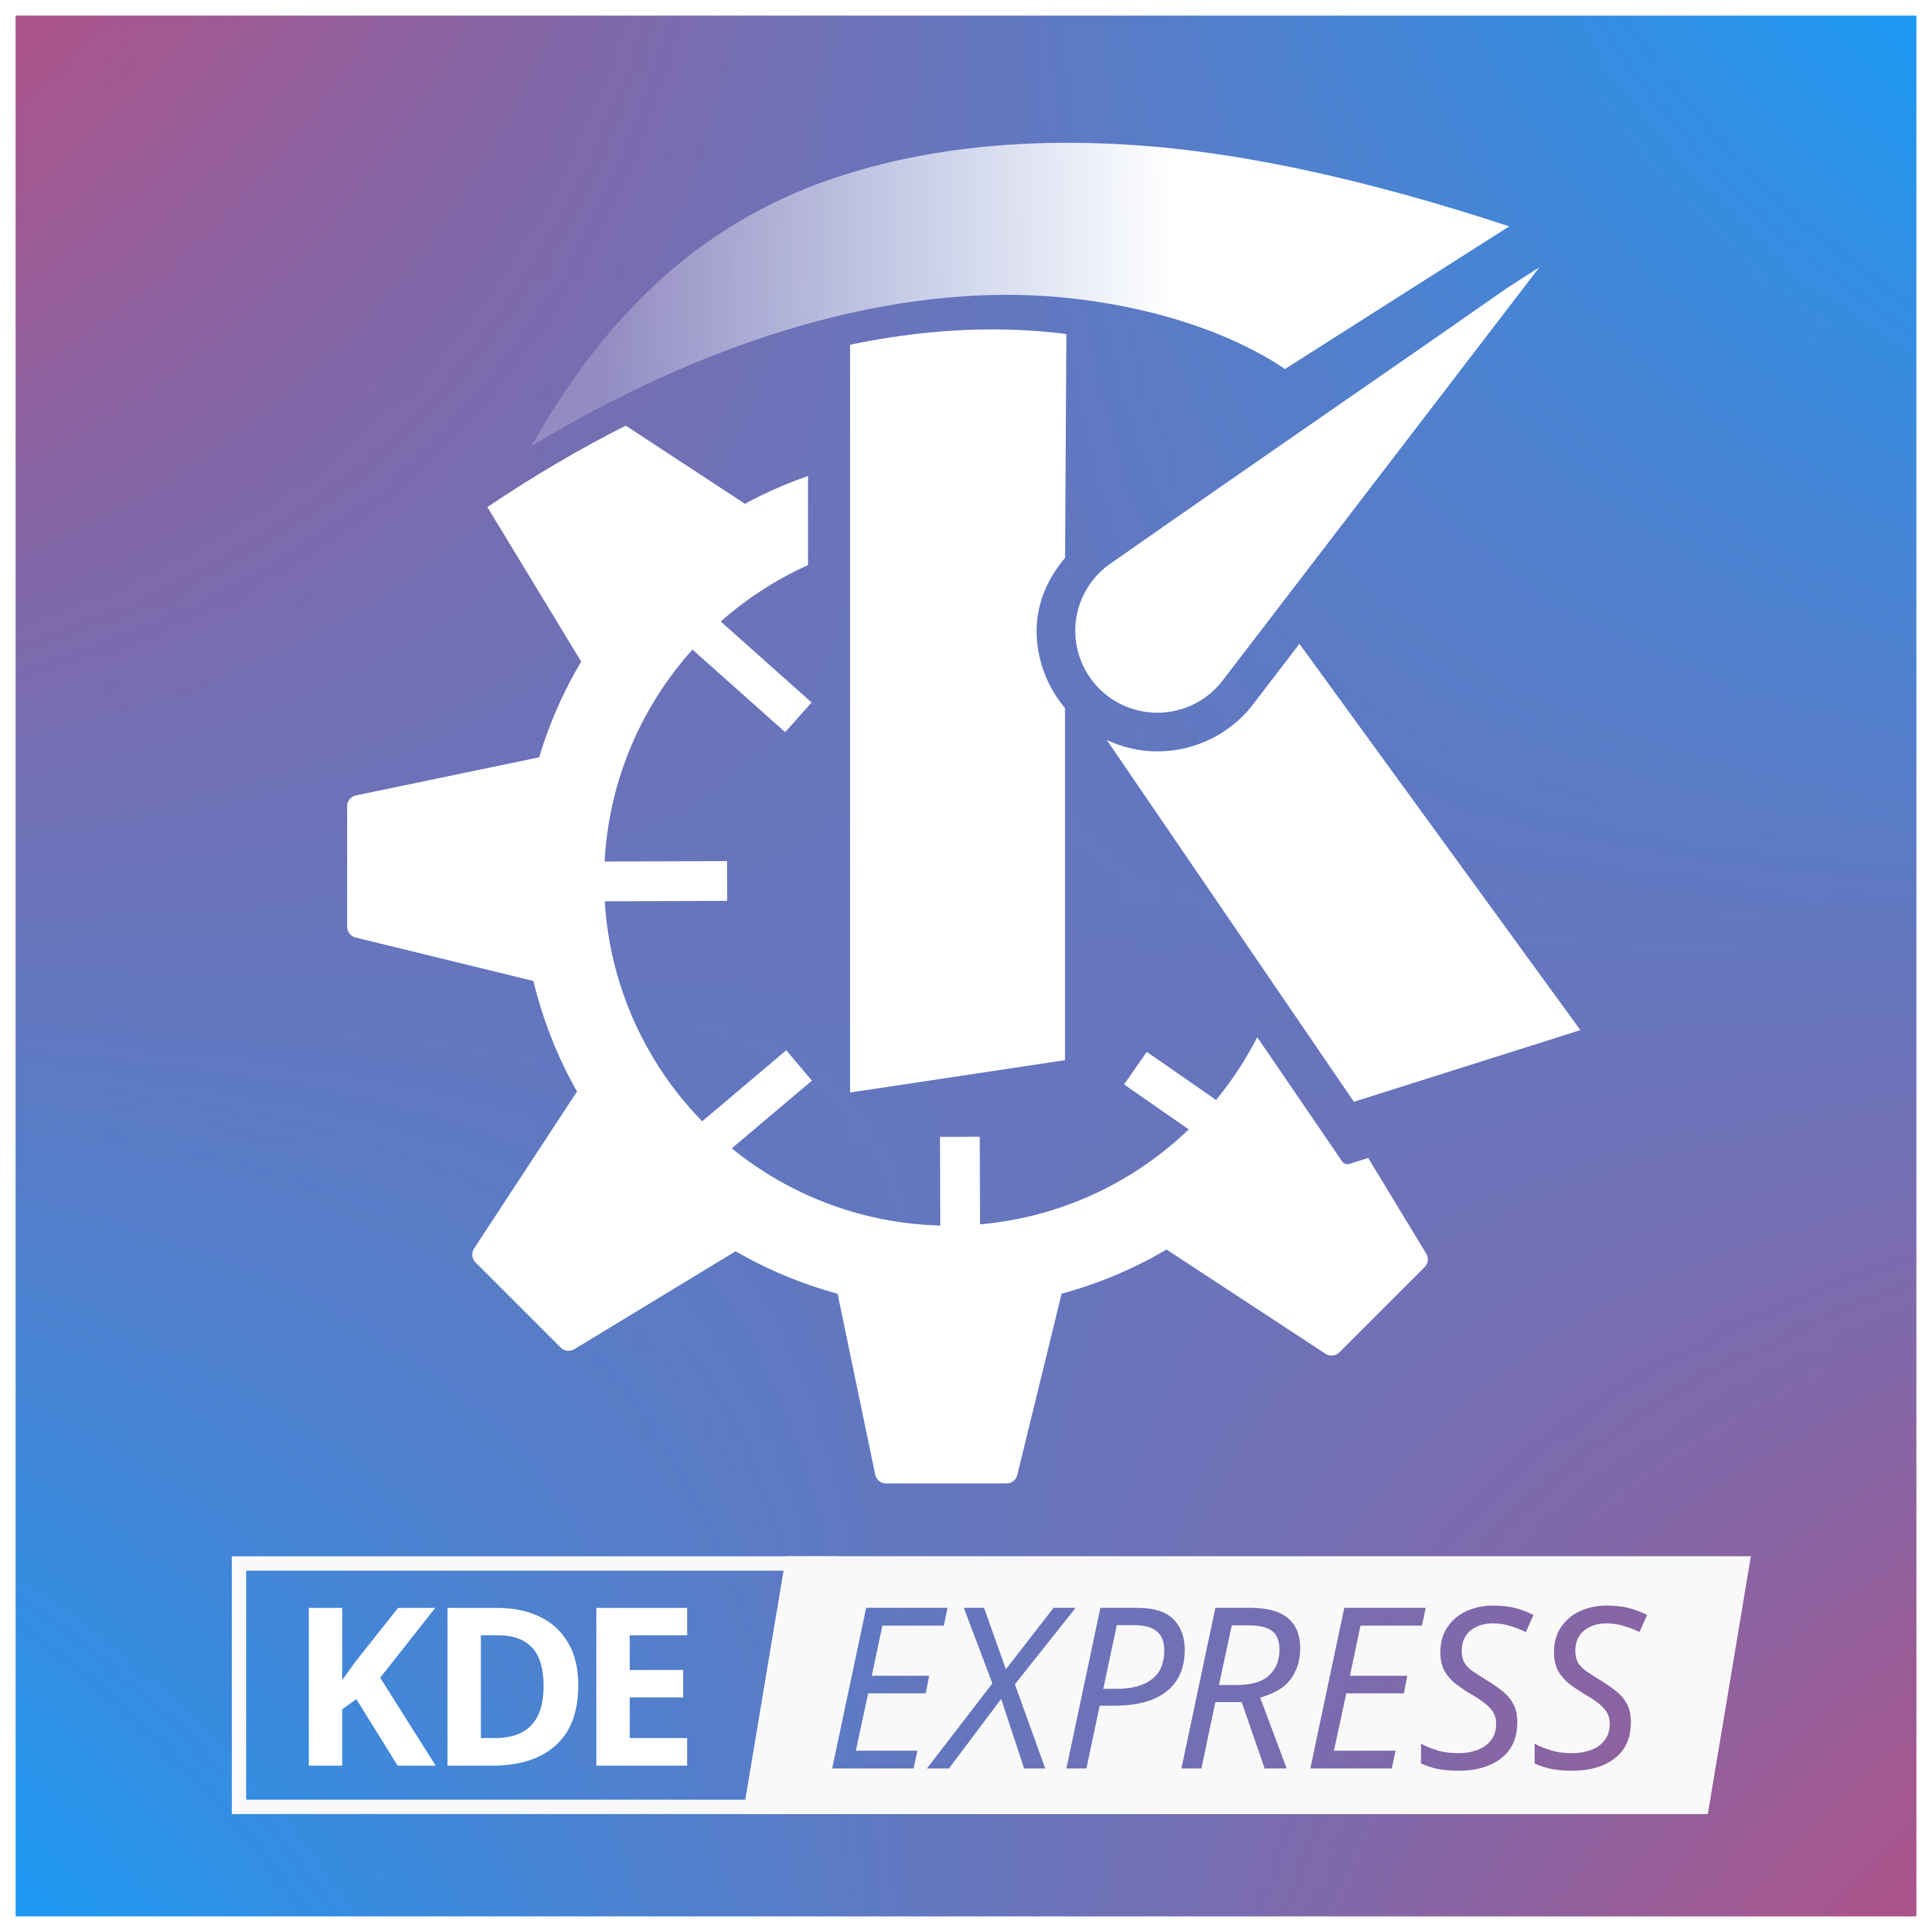 KDE EXPRESS, una K en una rueda dentada y encima una flecha dando sensación de movimiento